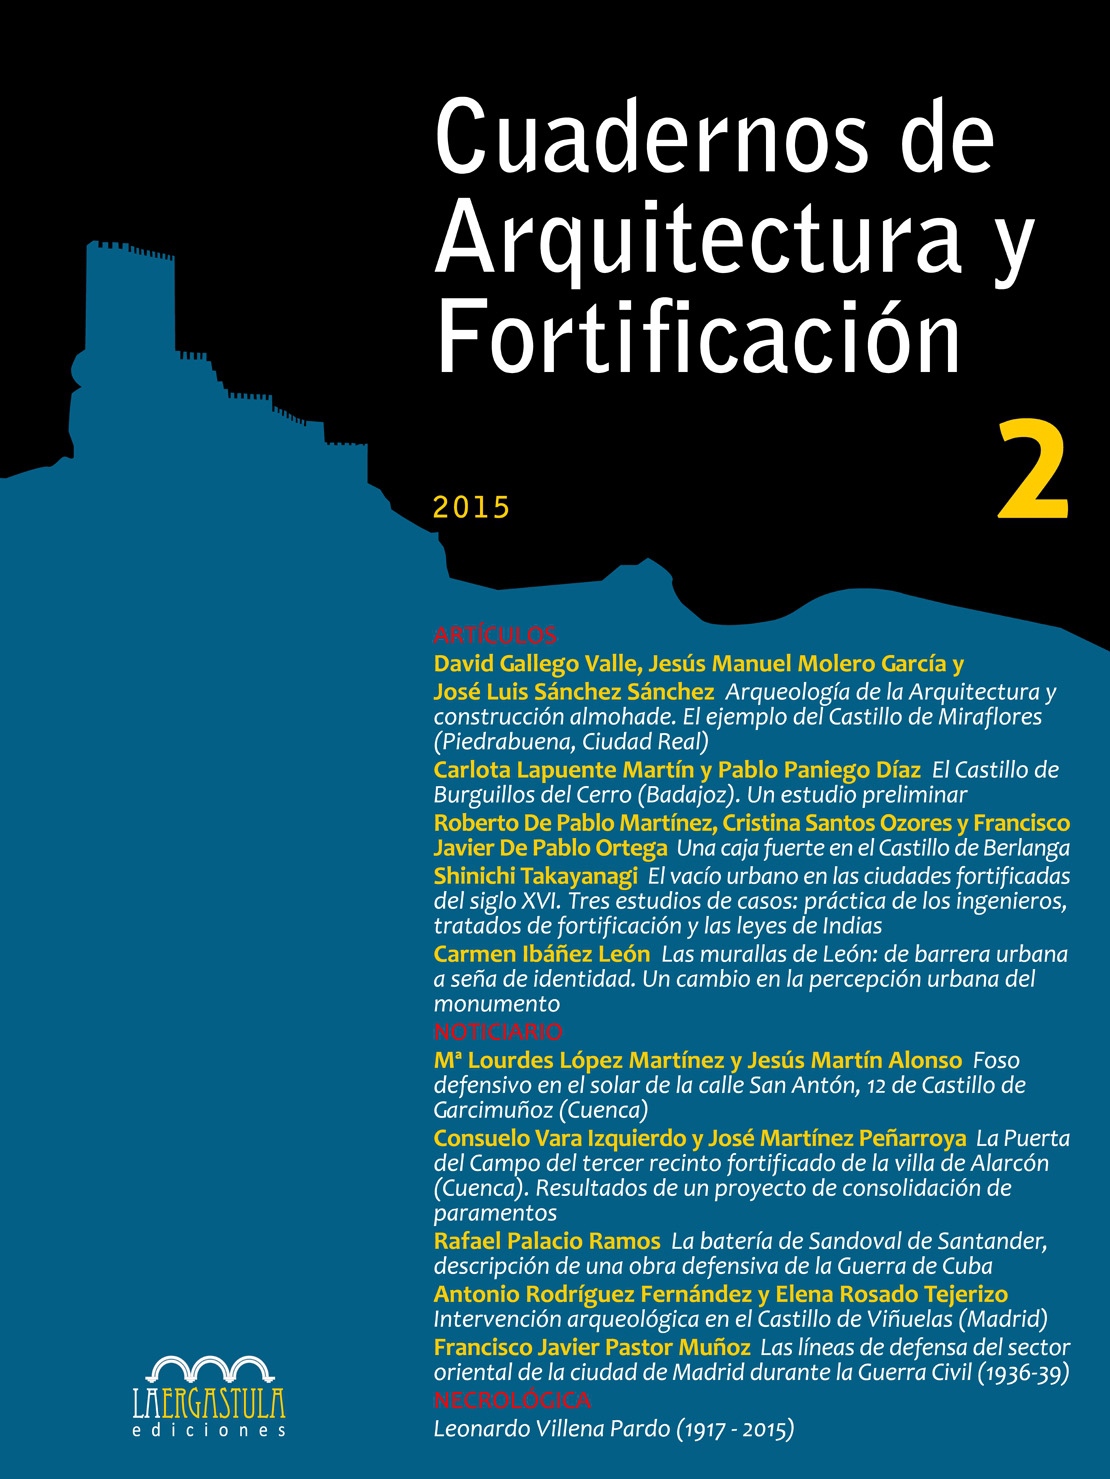 Cuadernos de Arquitectura y Fortificación, Nº 2, año 2015. 9788416242177